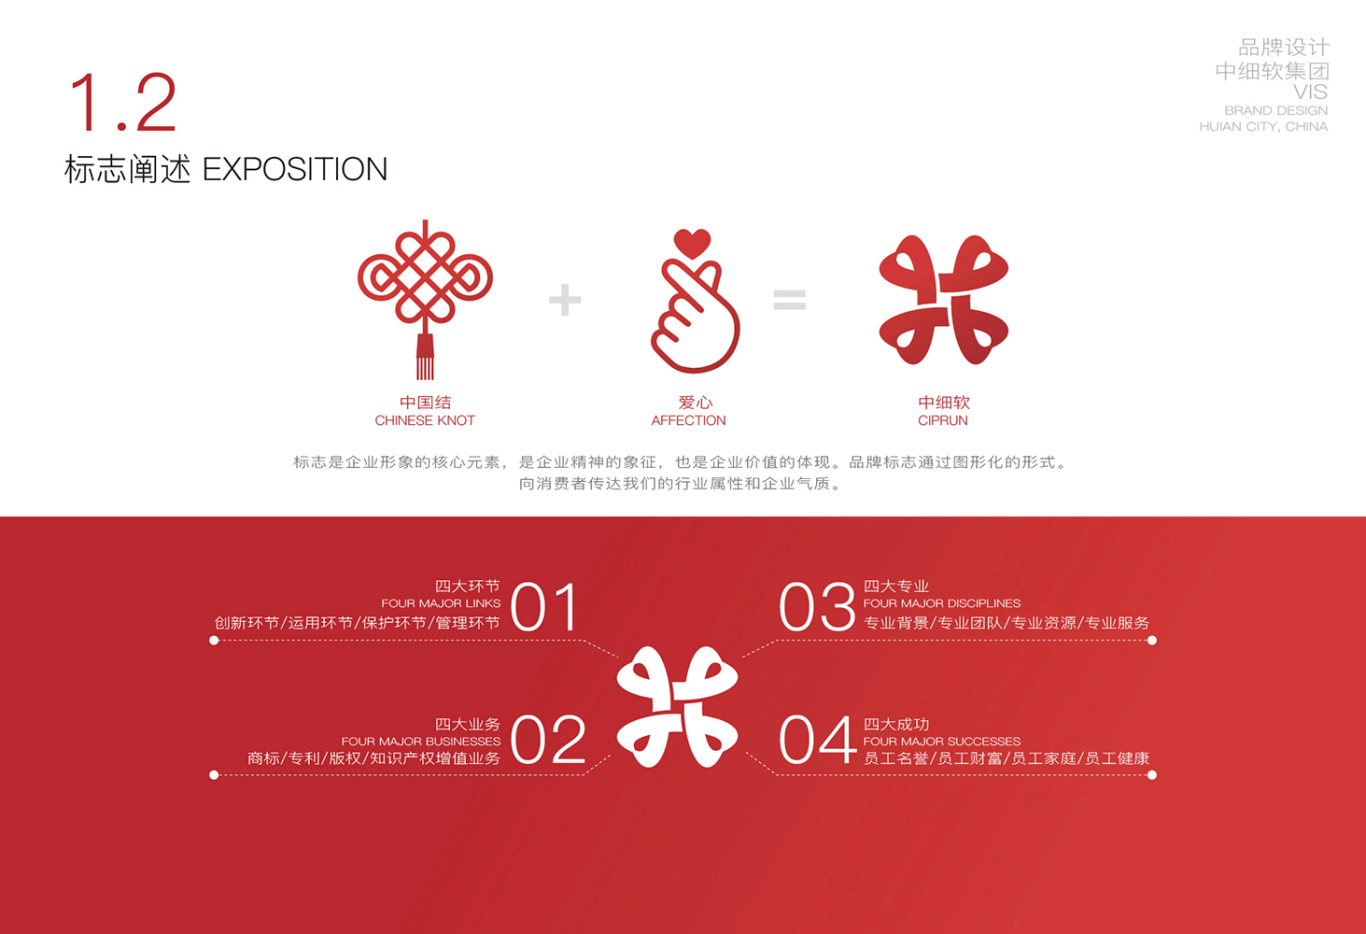 中细软集团 logo/vi 及其他宣传设计图1